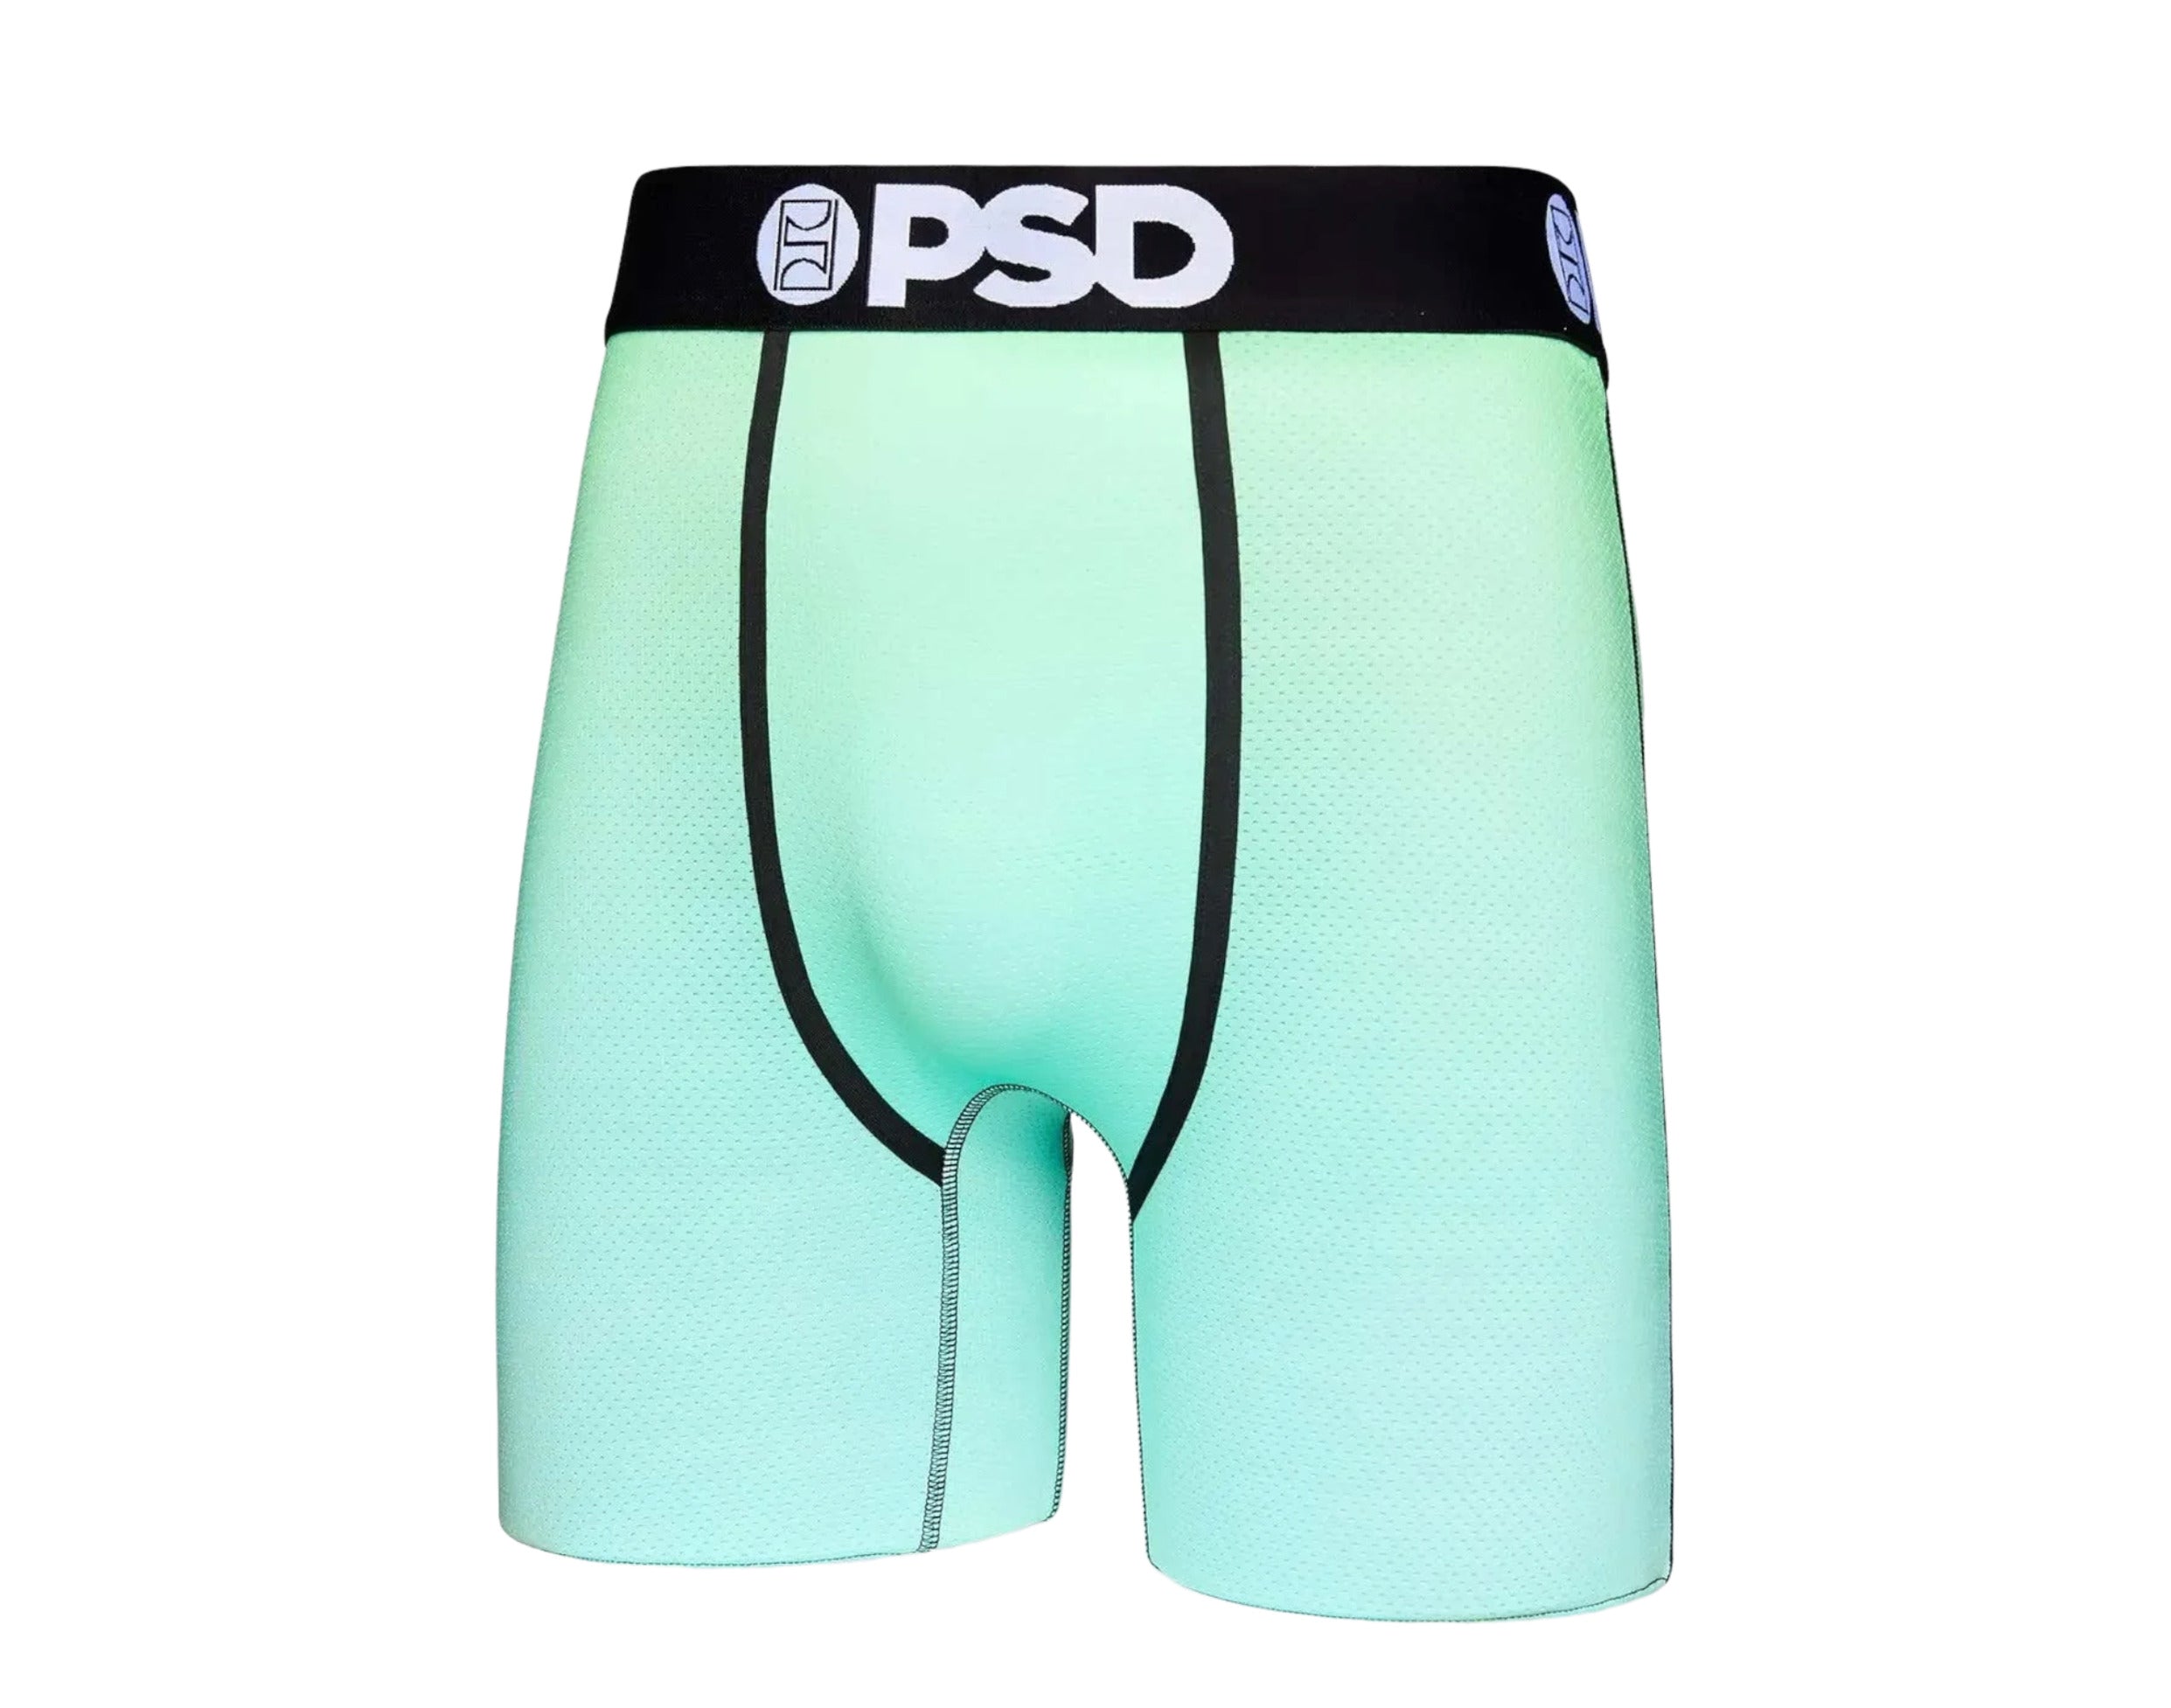 PSD Underwear 3-Pack Cool Mesh Boxer Briefs